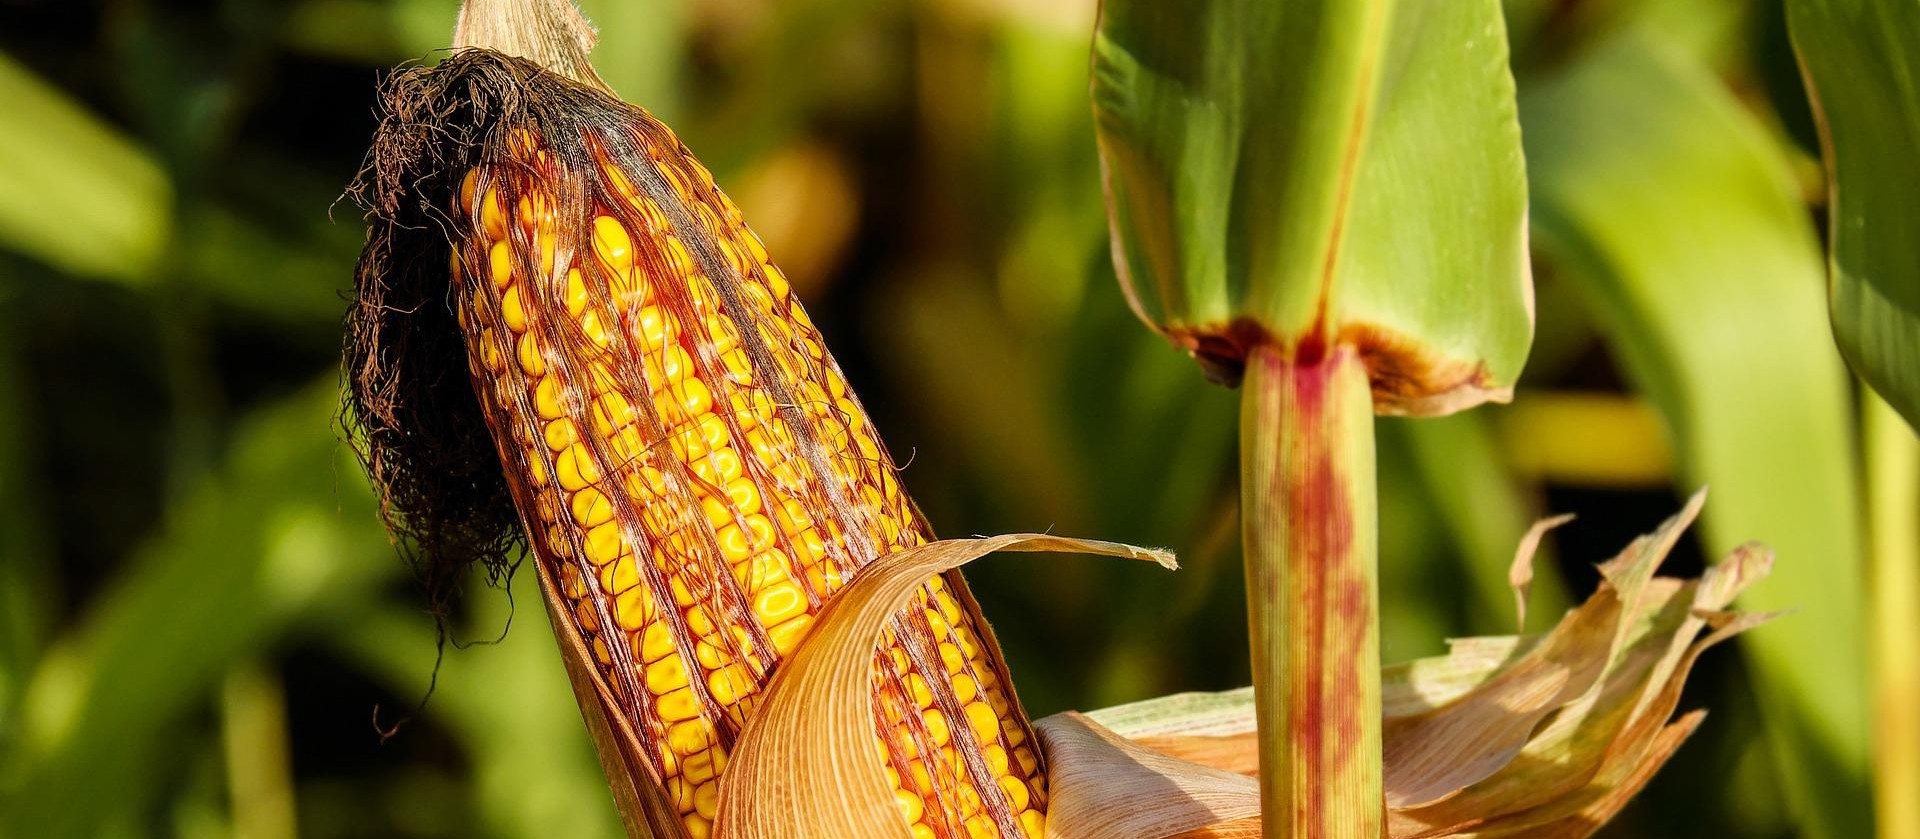 Produção do etanol de milho está em ascensão no Brasil 